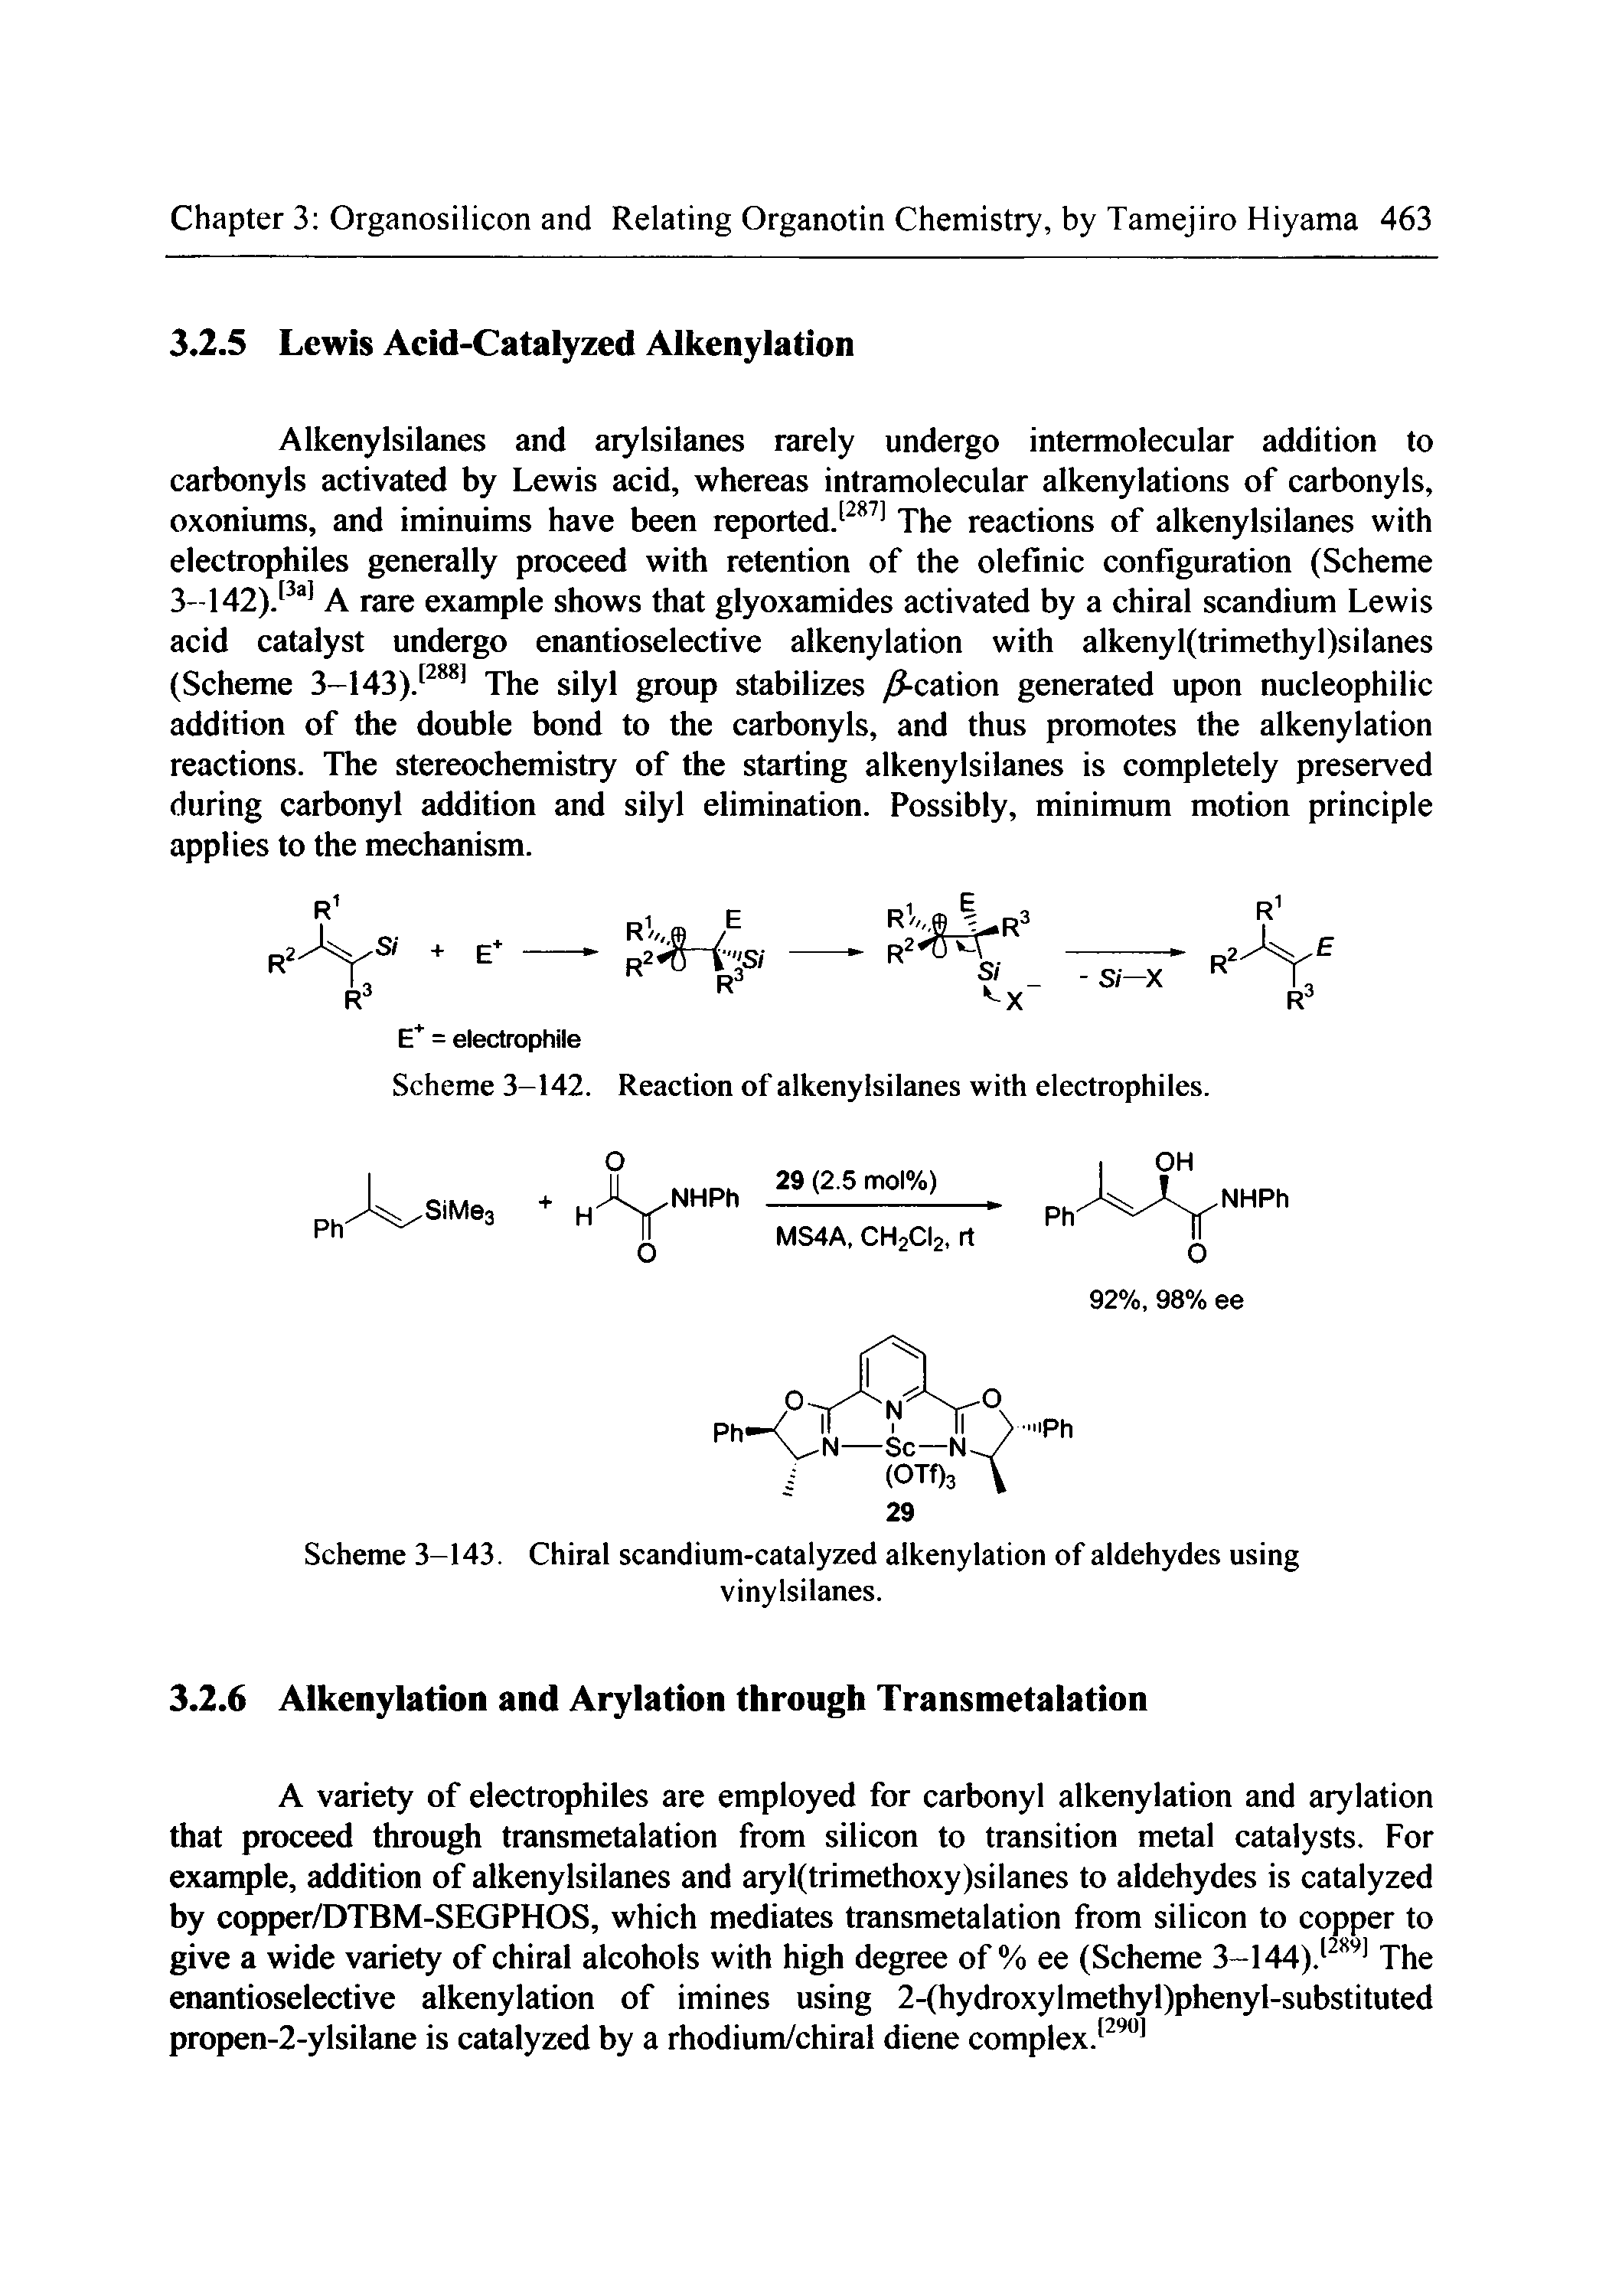 Scheme 3-143. Chiral scandium-catalyzed alkenylation of aldehydes using...